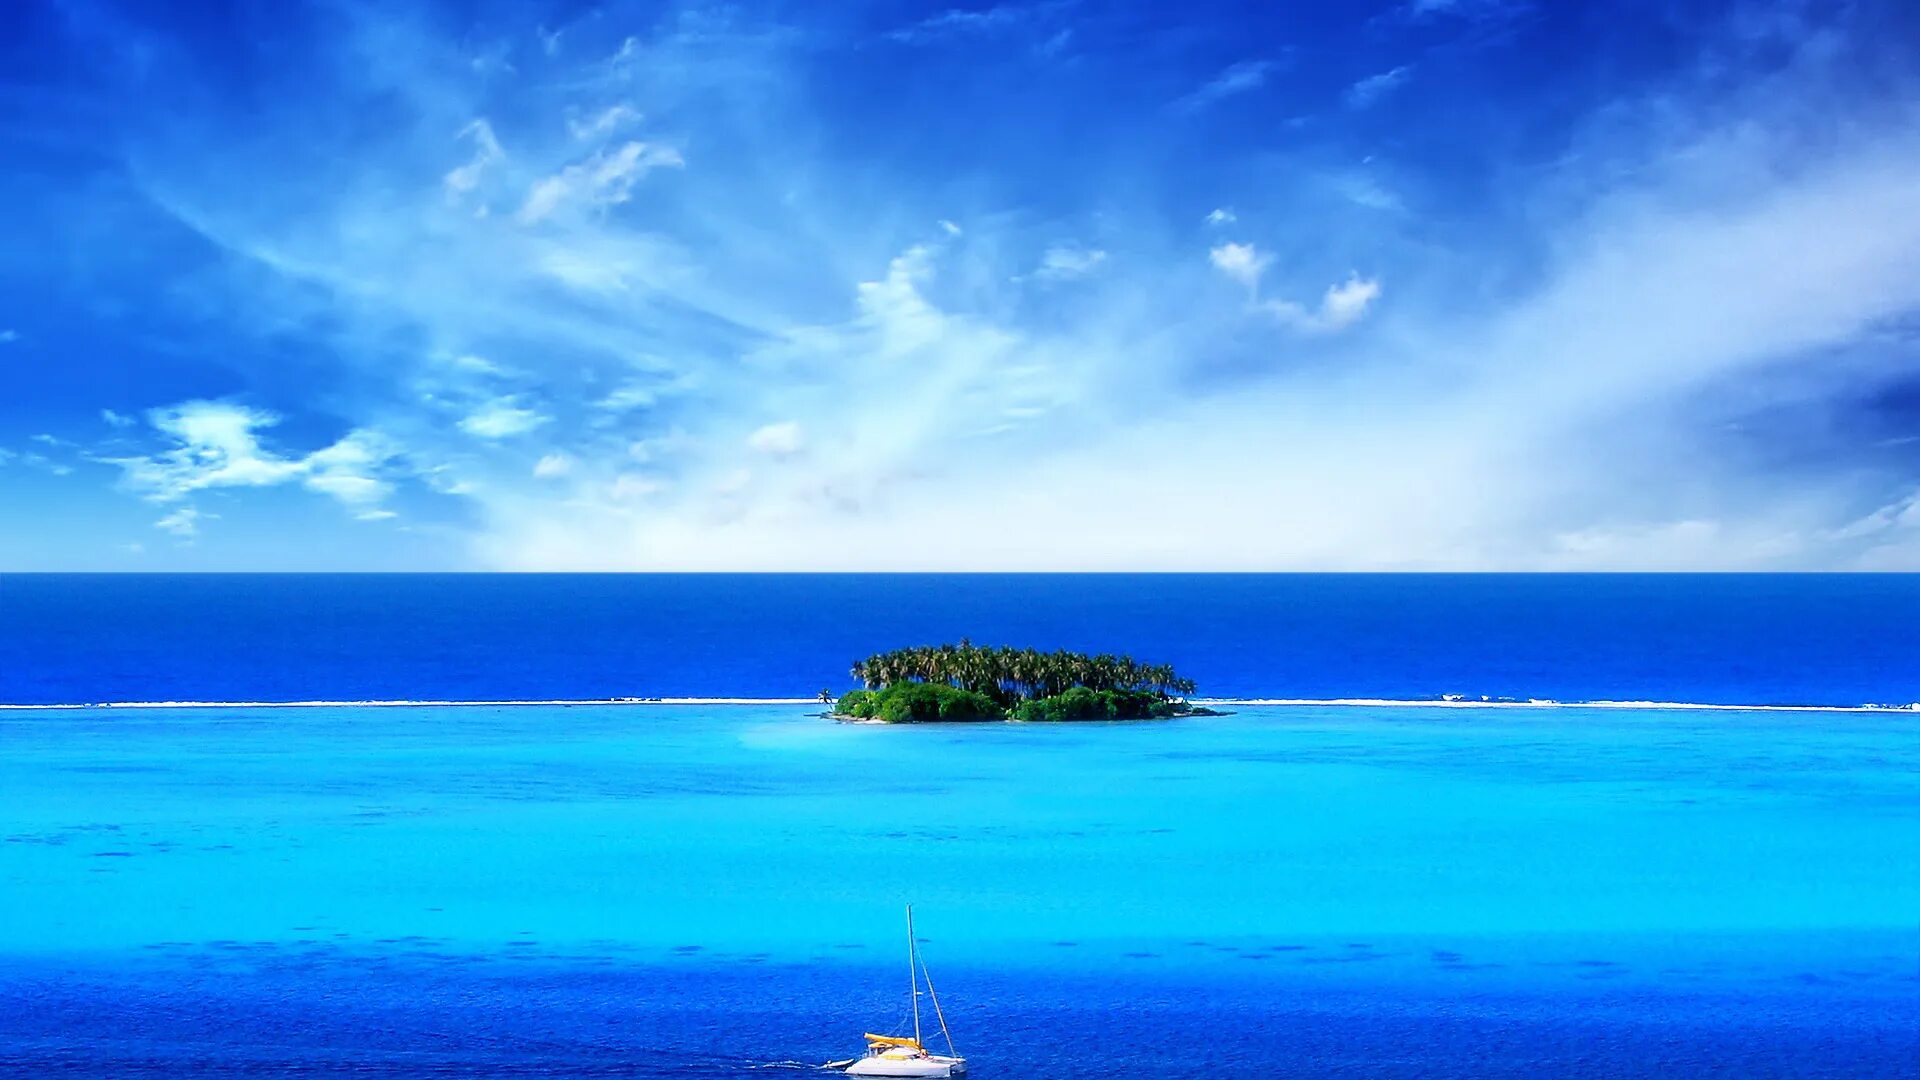 Perfect island. Голубое море. Природа море. Красивый остров в океане. Обои на рабочий стол море.